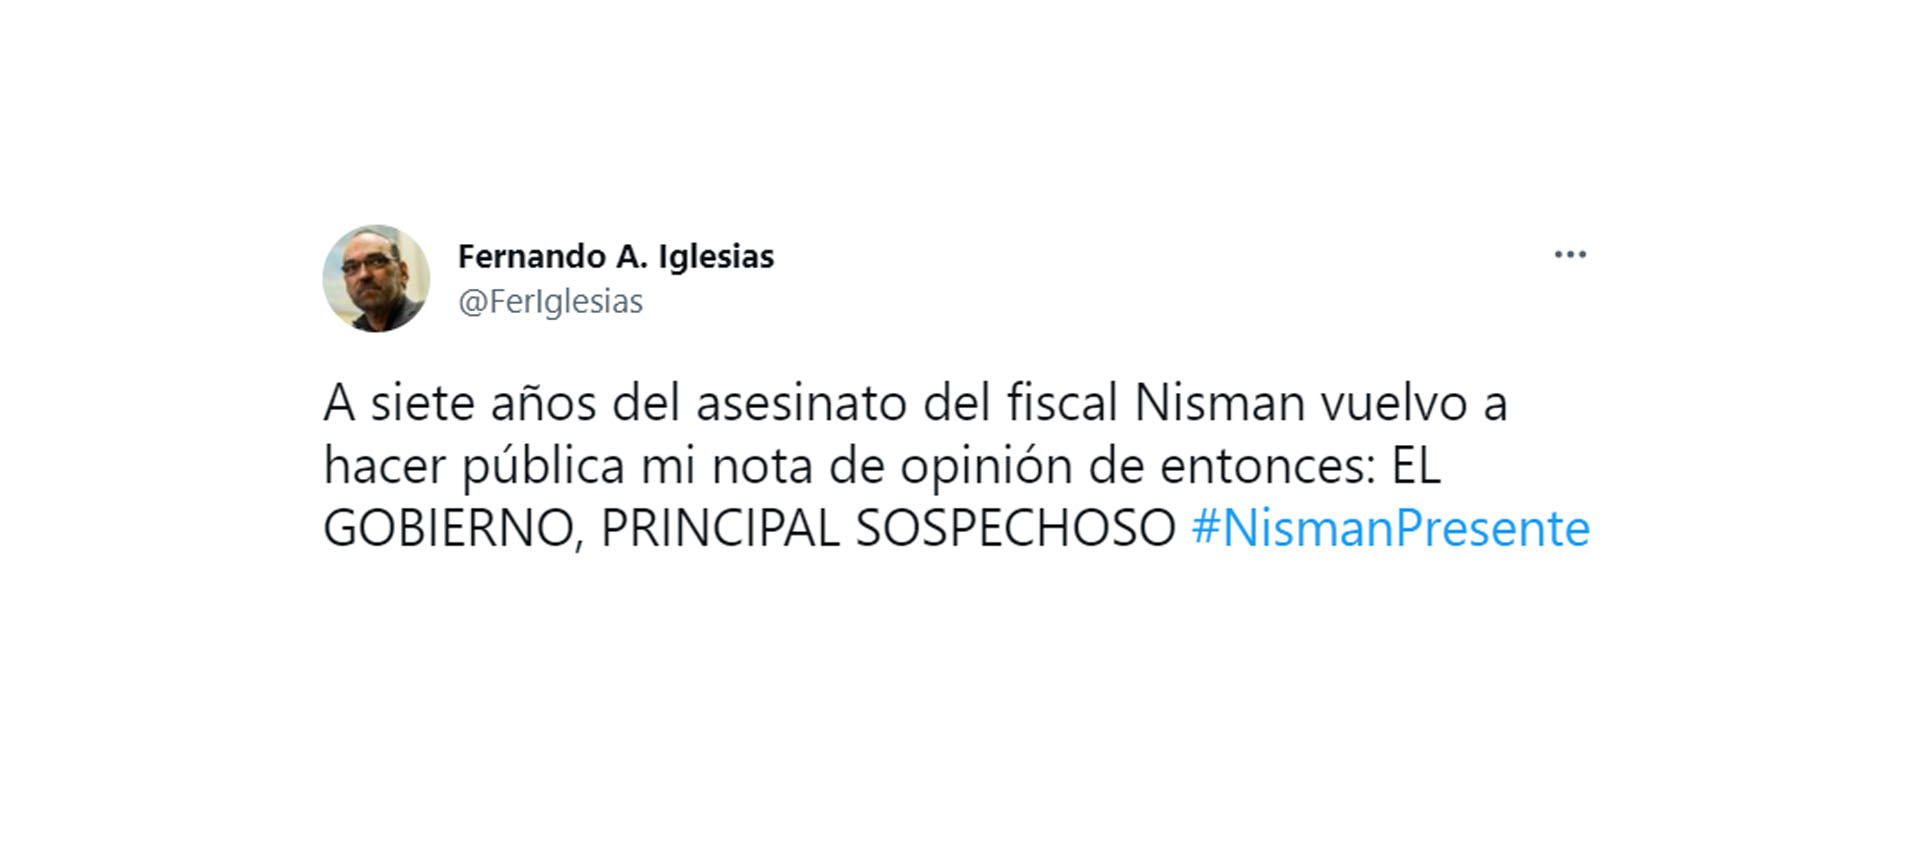 Tuit del diputado de Juntos por el Cambio, Fernando Iglesias